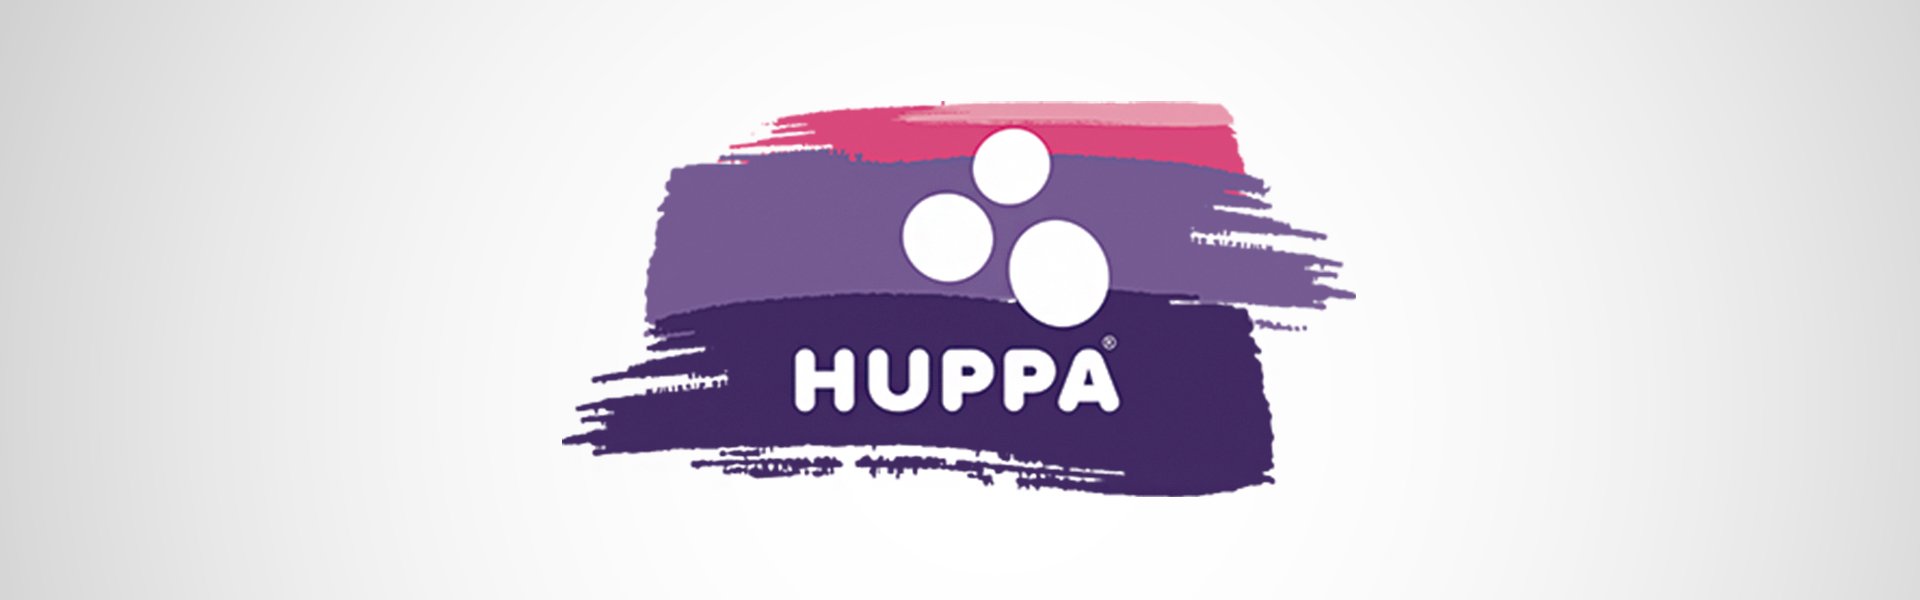 Huppa kumštinės pirštinės berniukams Gaya, 60086, tamsiai mėlyna Huppa